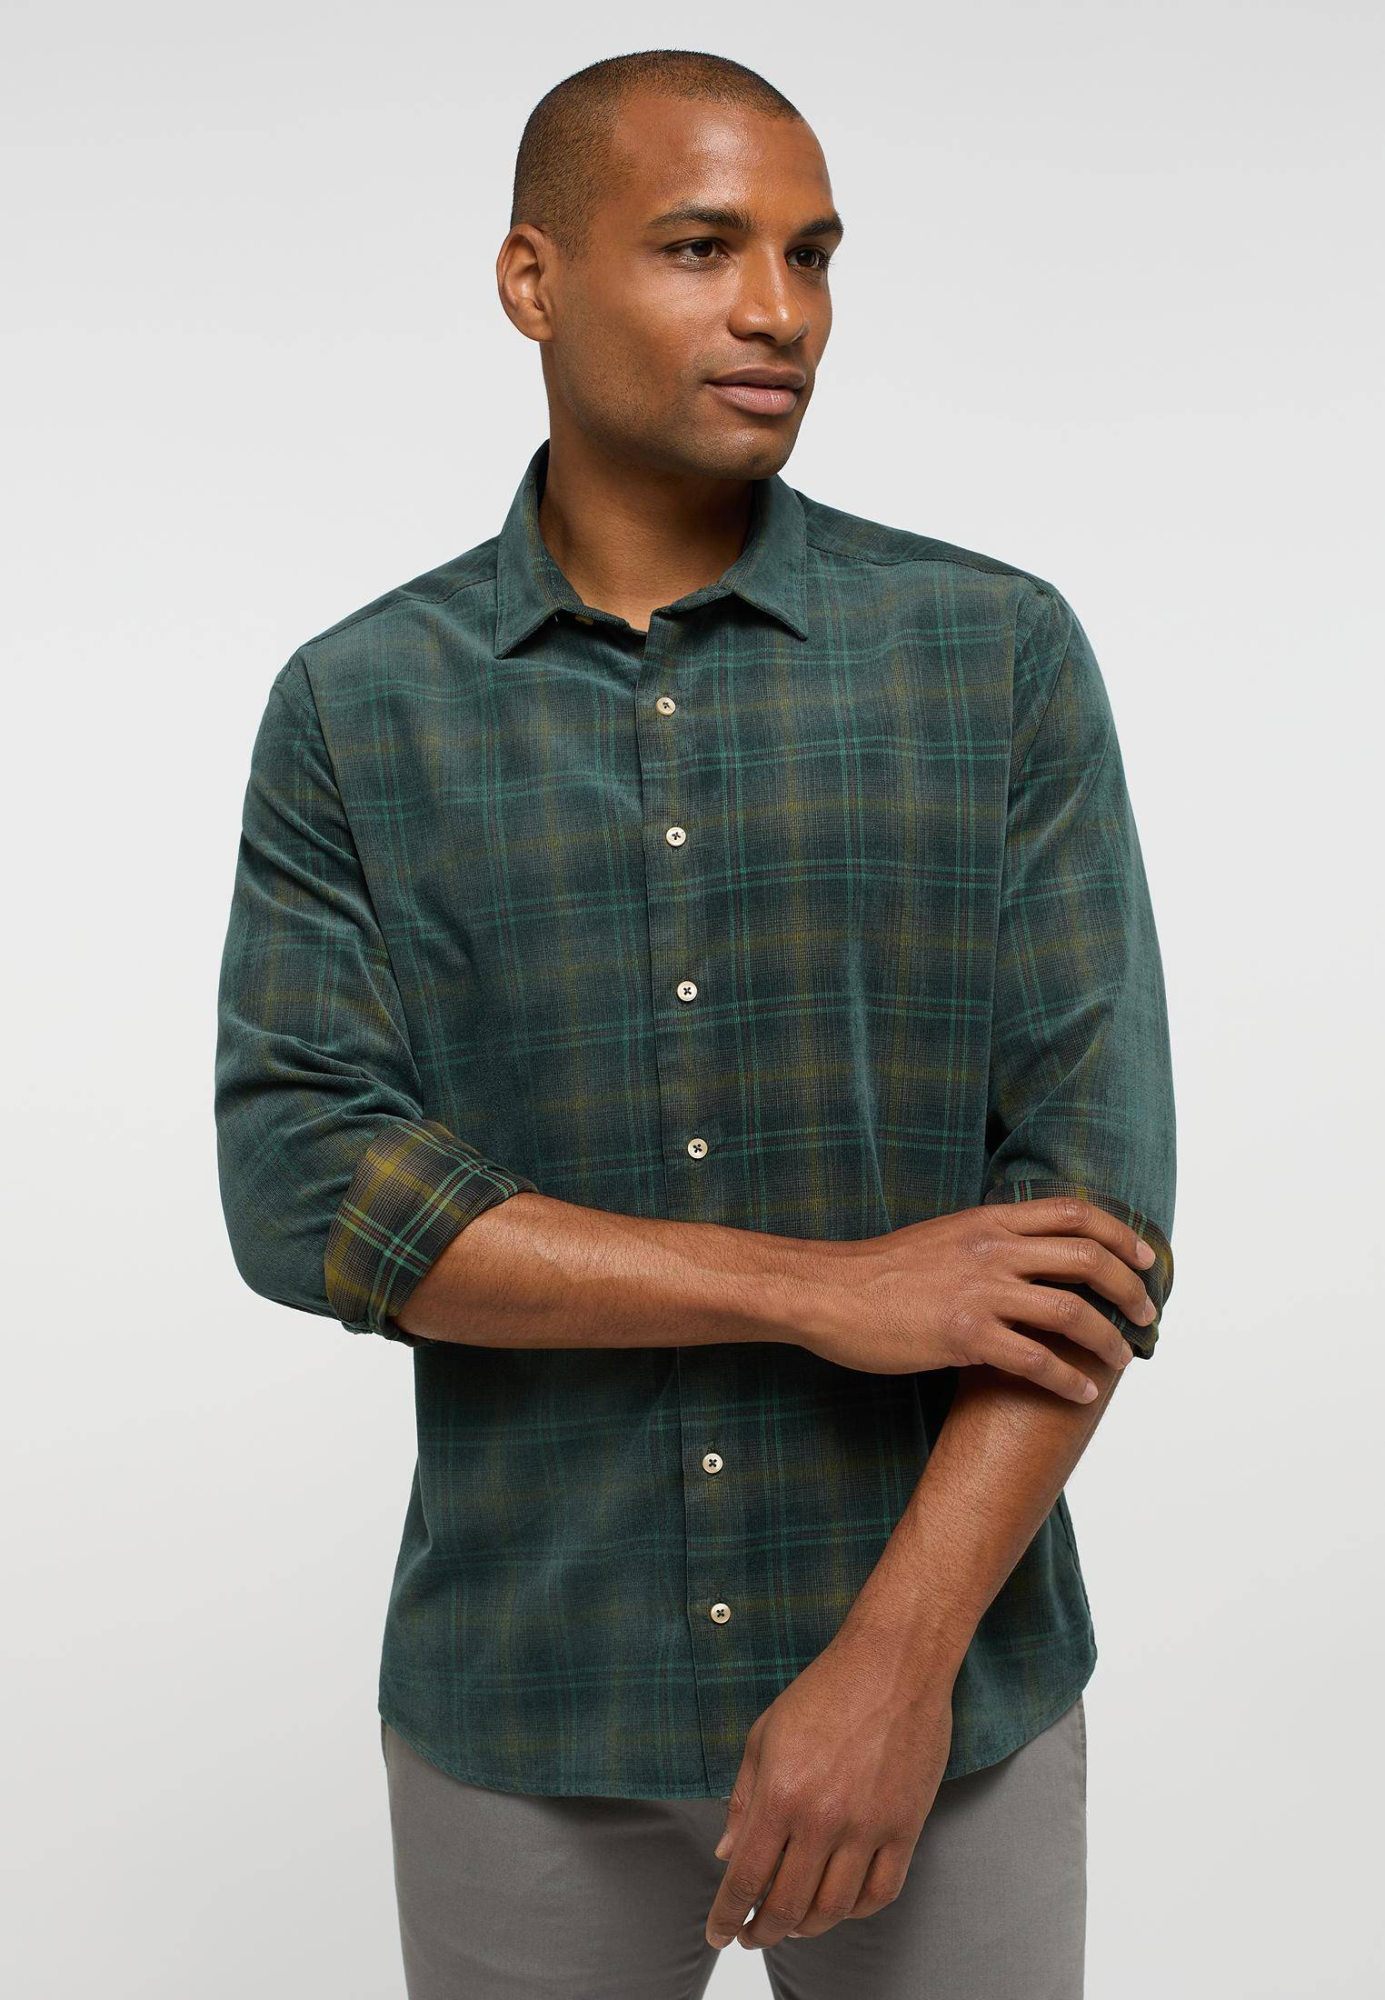 Мужская рубашка ETERNA, зеленая, цвет зеленый, размер 48 - фото 1